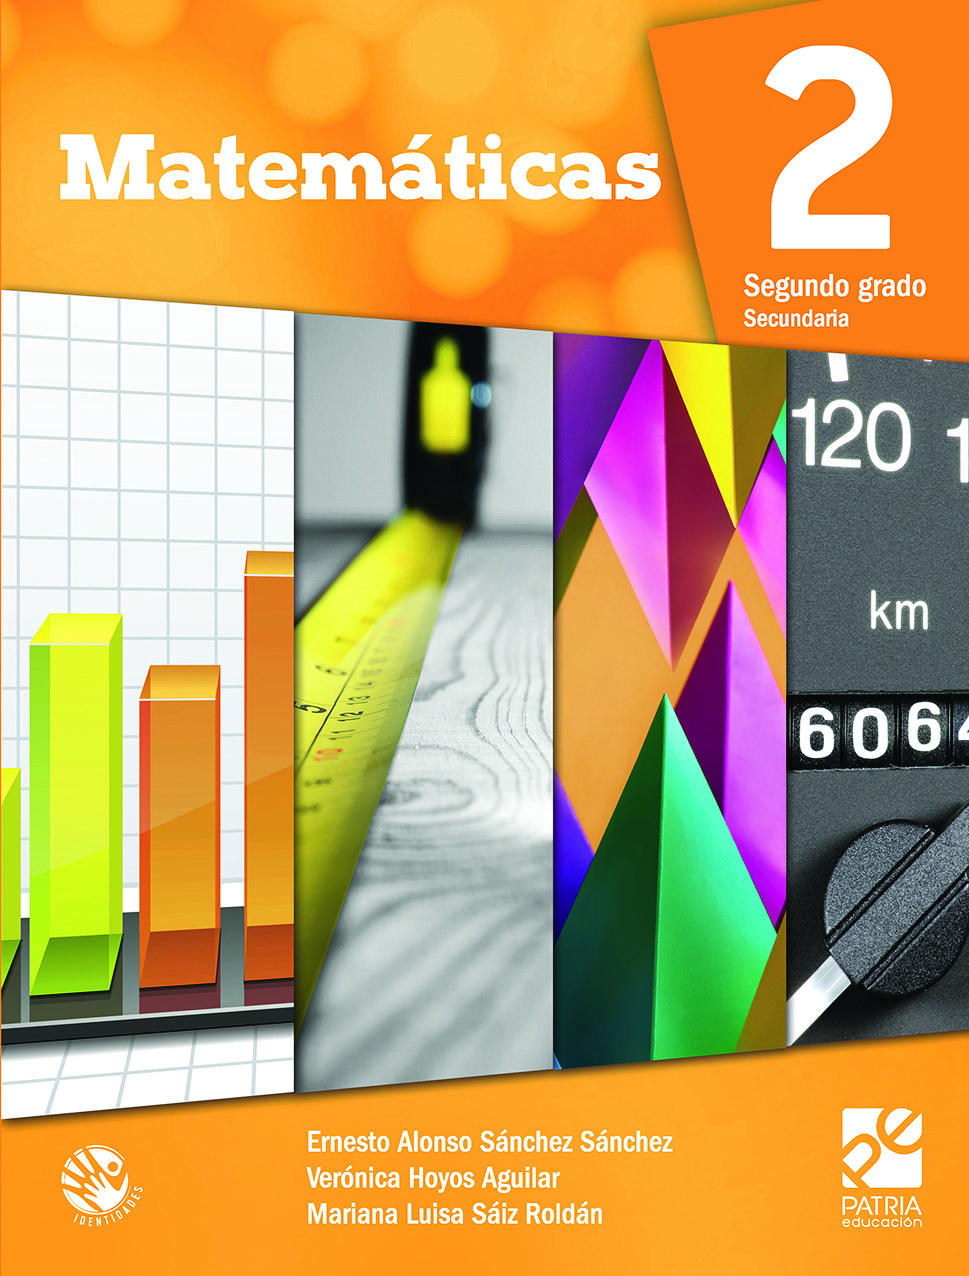 Libro De Matemáticas Segundo Grado Contestado Telesecundaria - Desafios Matematicos Libro Para ...